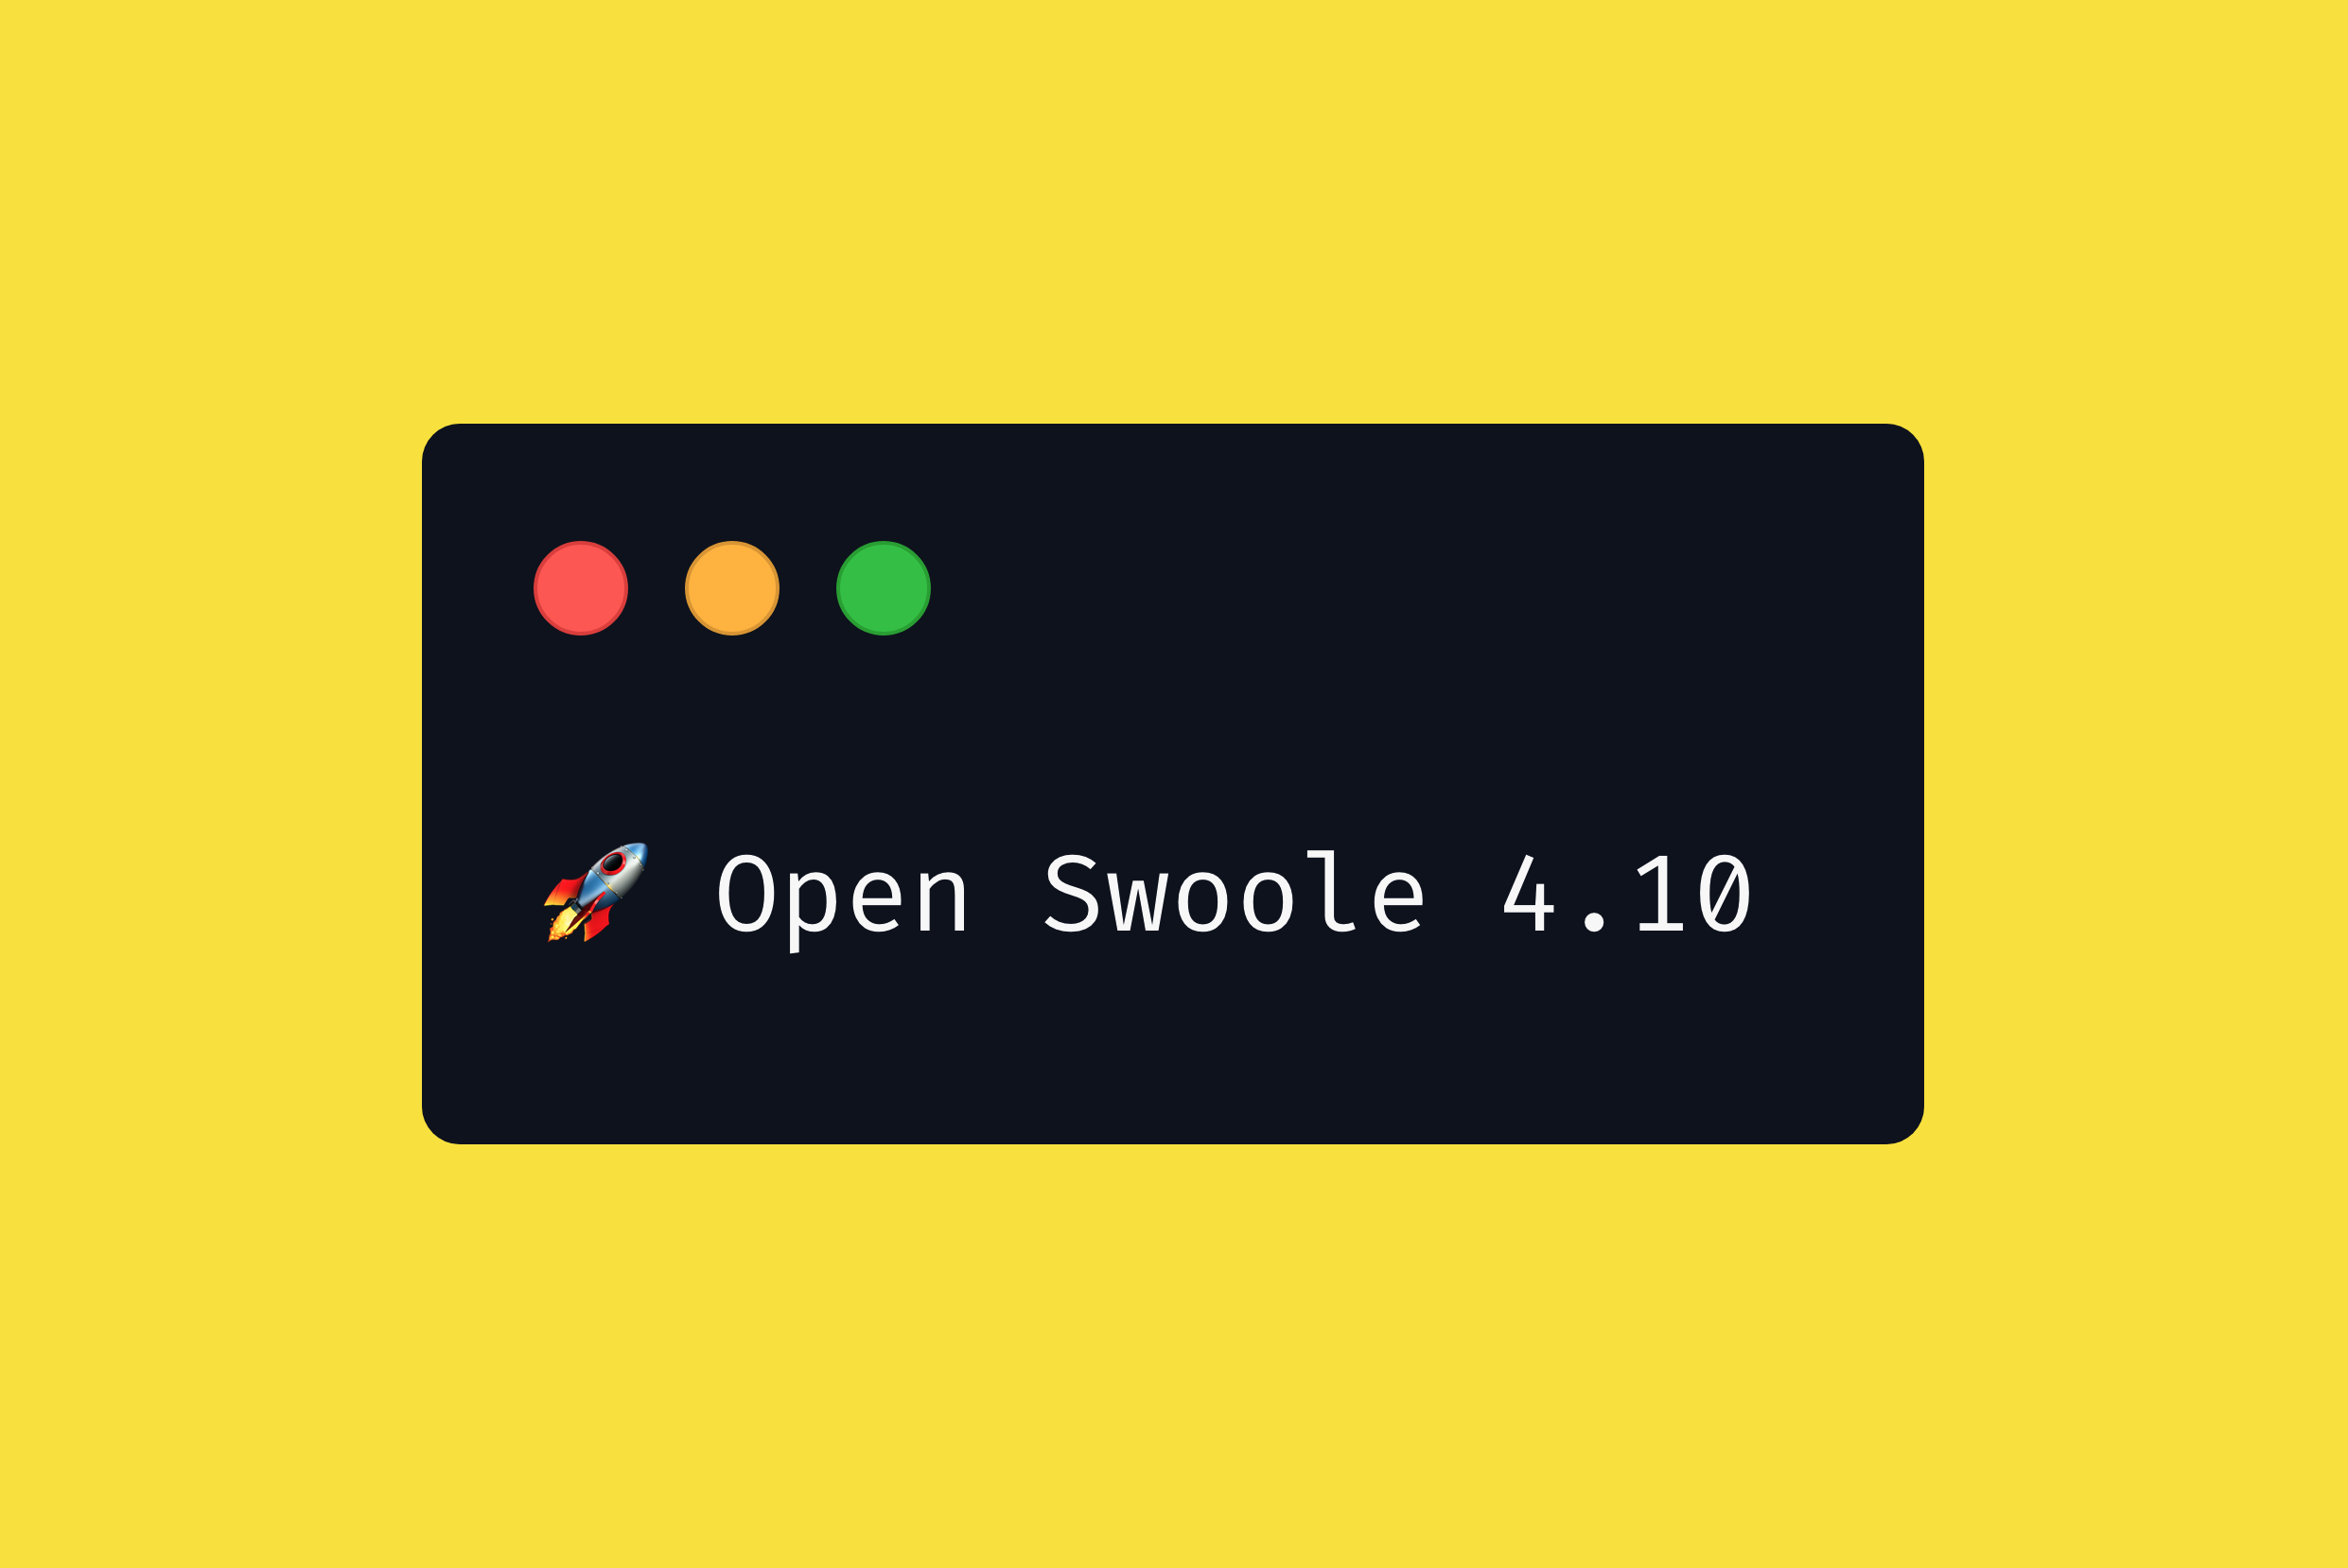 Open Swoole 4.10